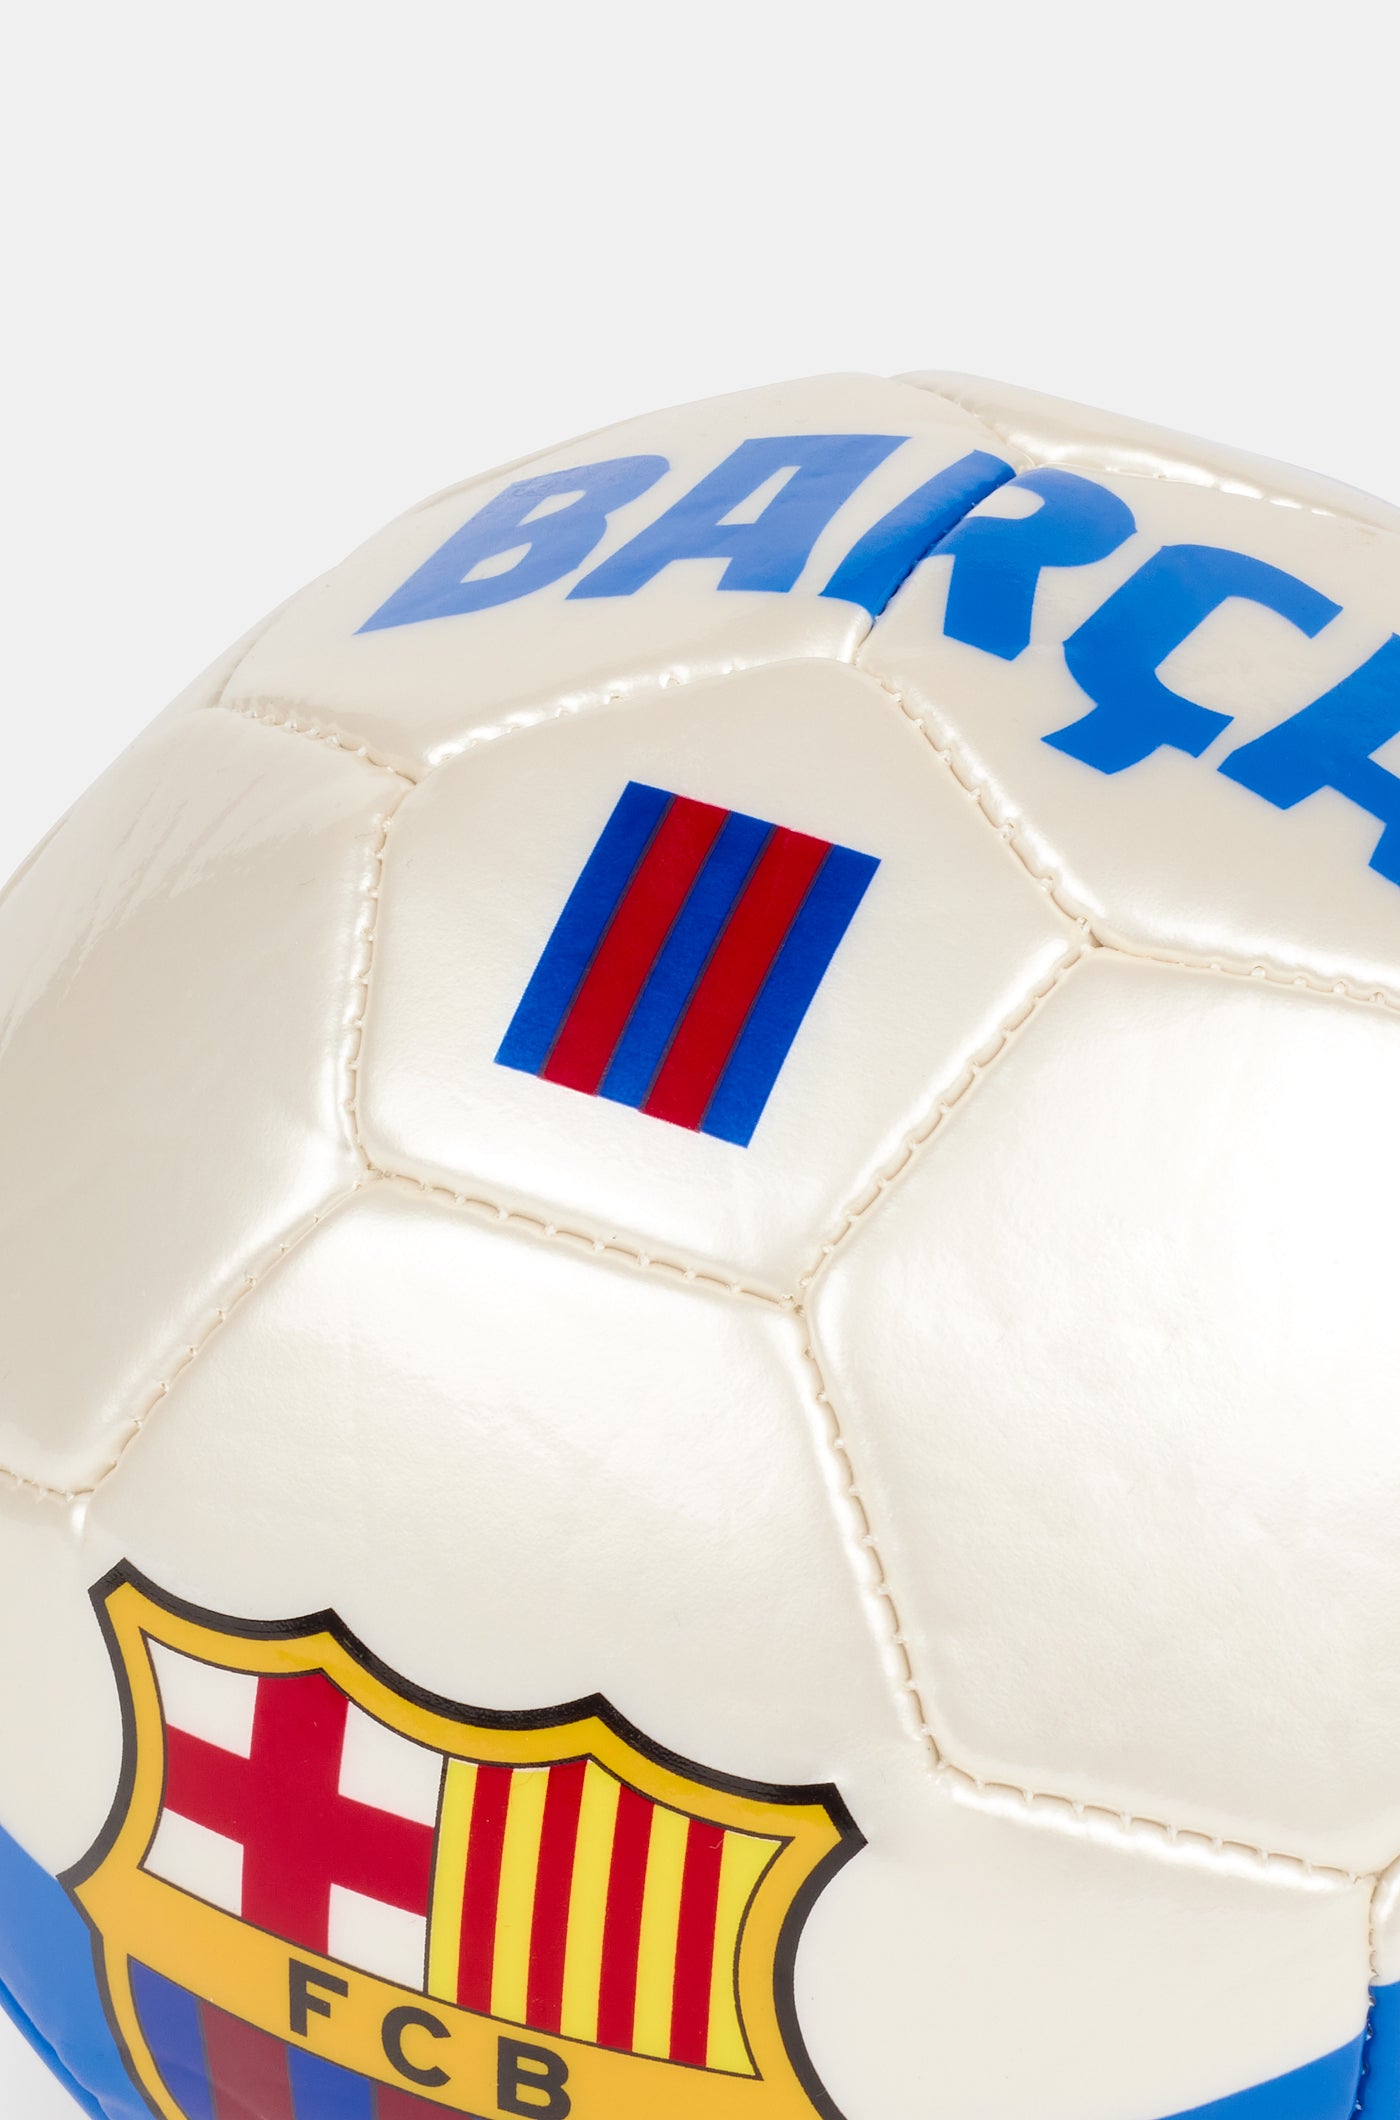 Away kit Ball FC Barcelona - small